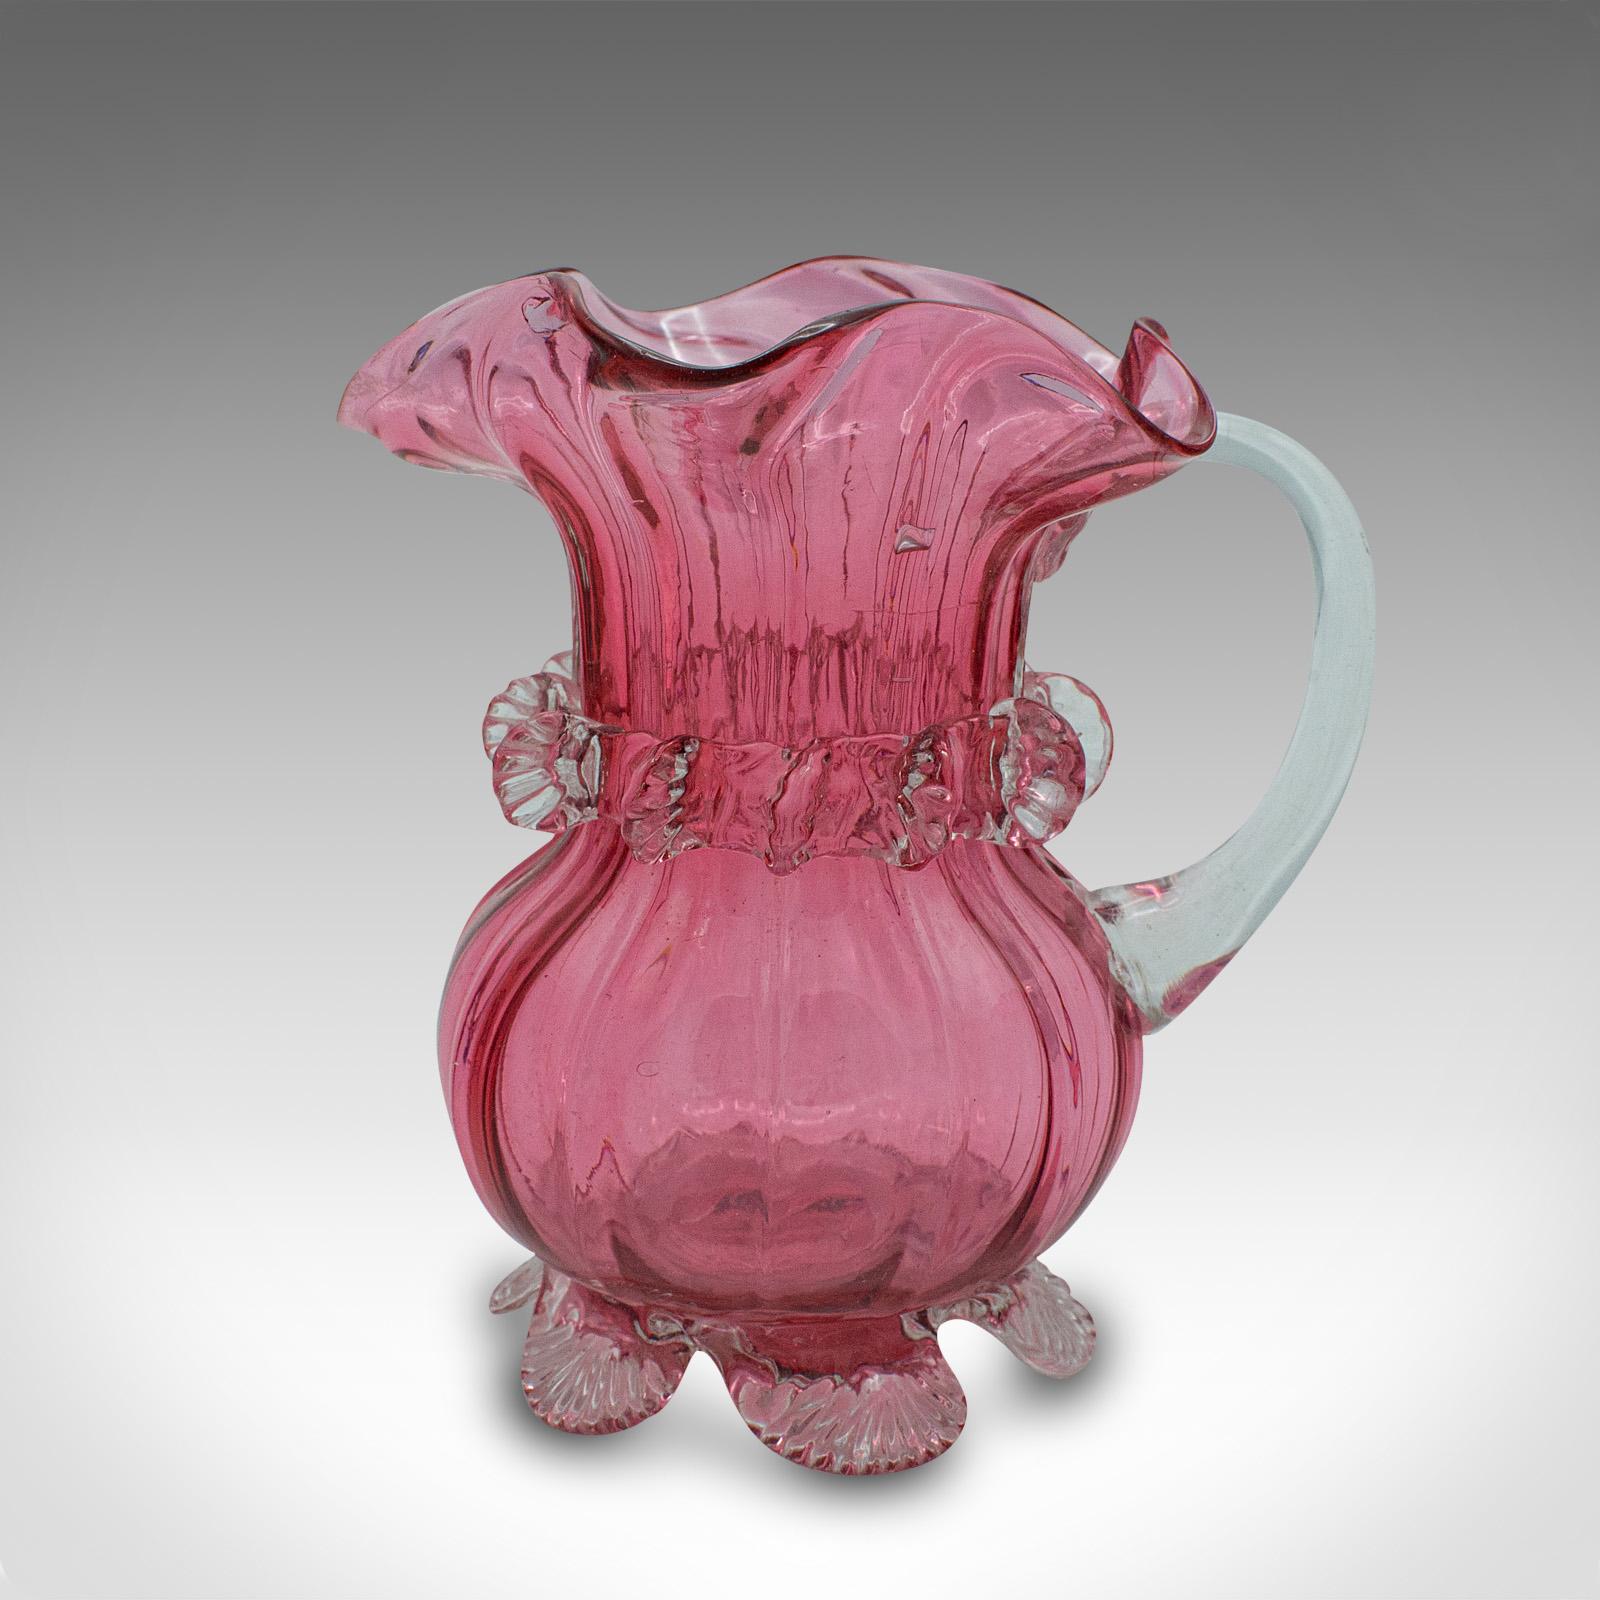 Vintage Cranberry Glass Stem Vase Set, English, Decorative, Flower Slip, Jug For Sale 2